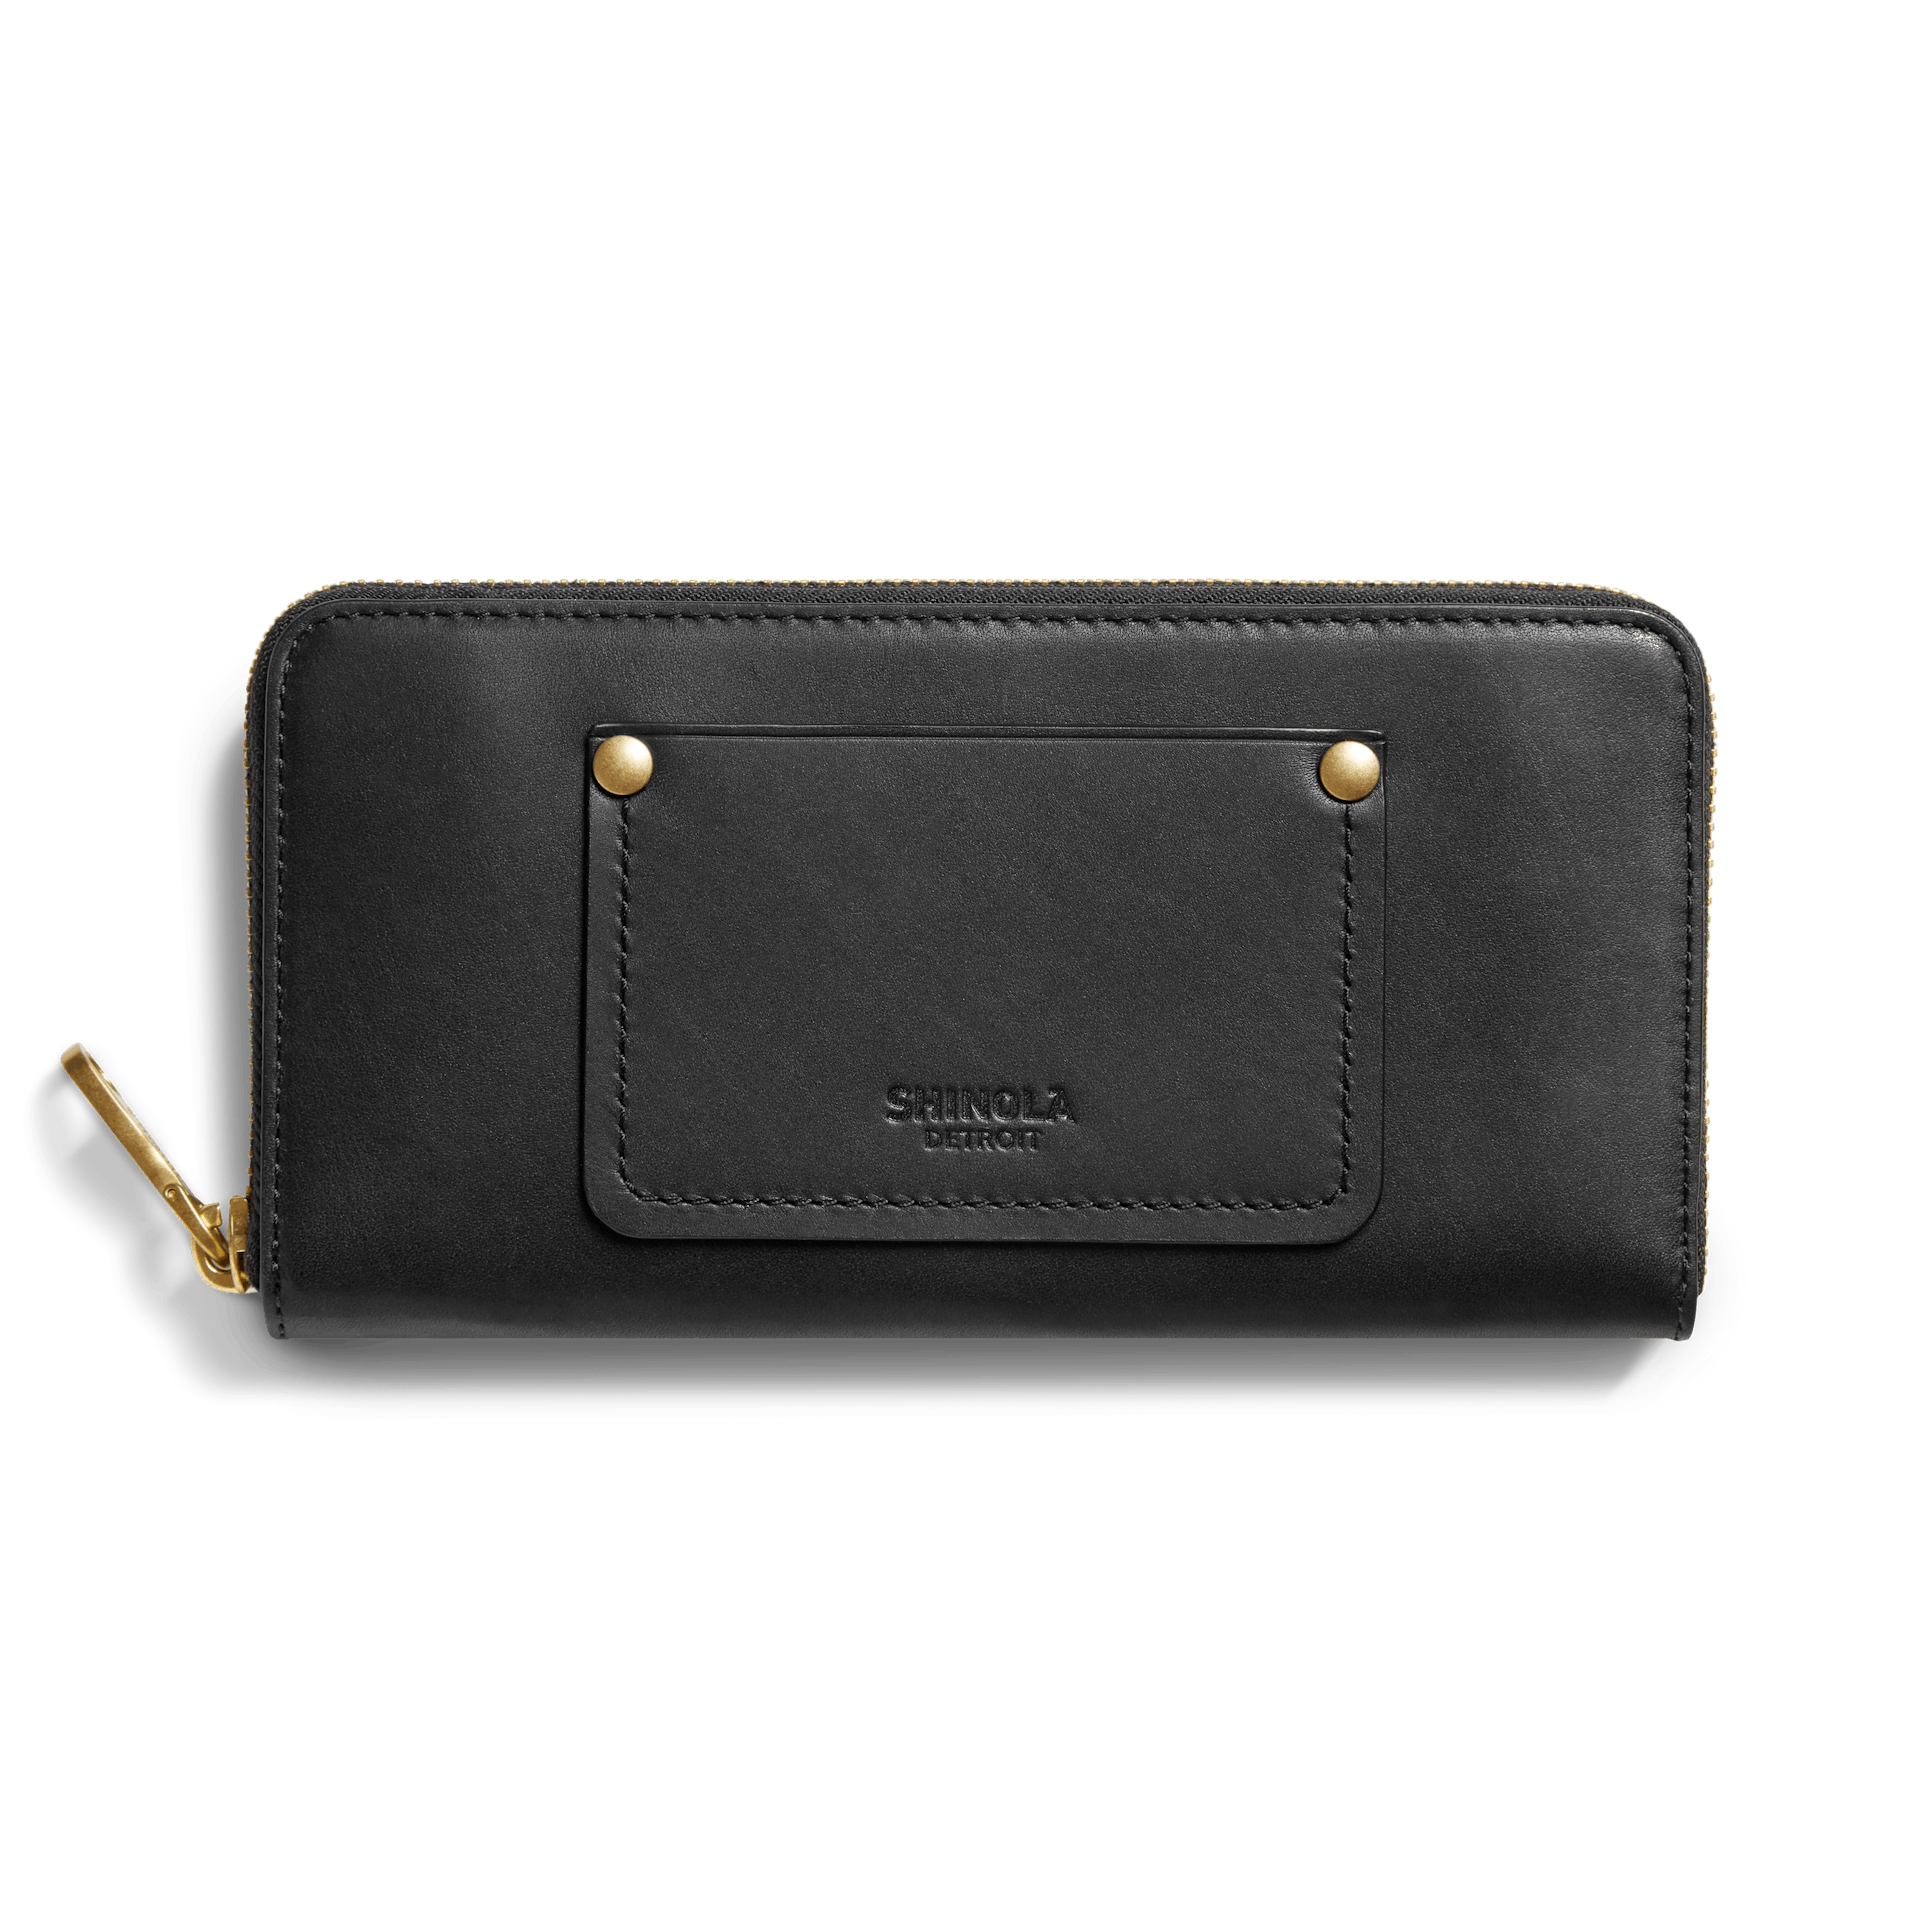 Long Wallet Women Purses Tassel Fashion Coin Purse Card Holder Wallets  Female Clutch PU Leather Wallet(